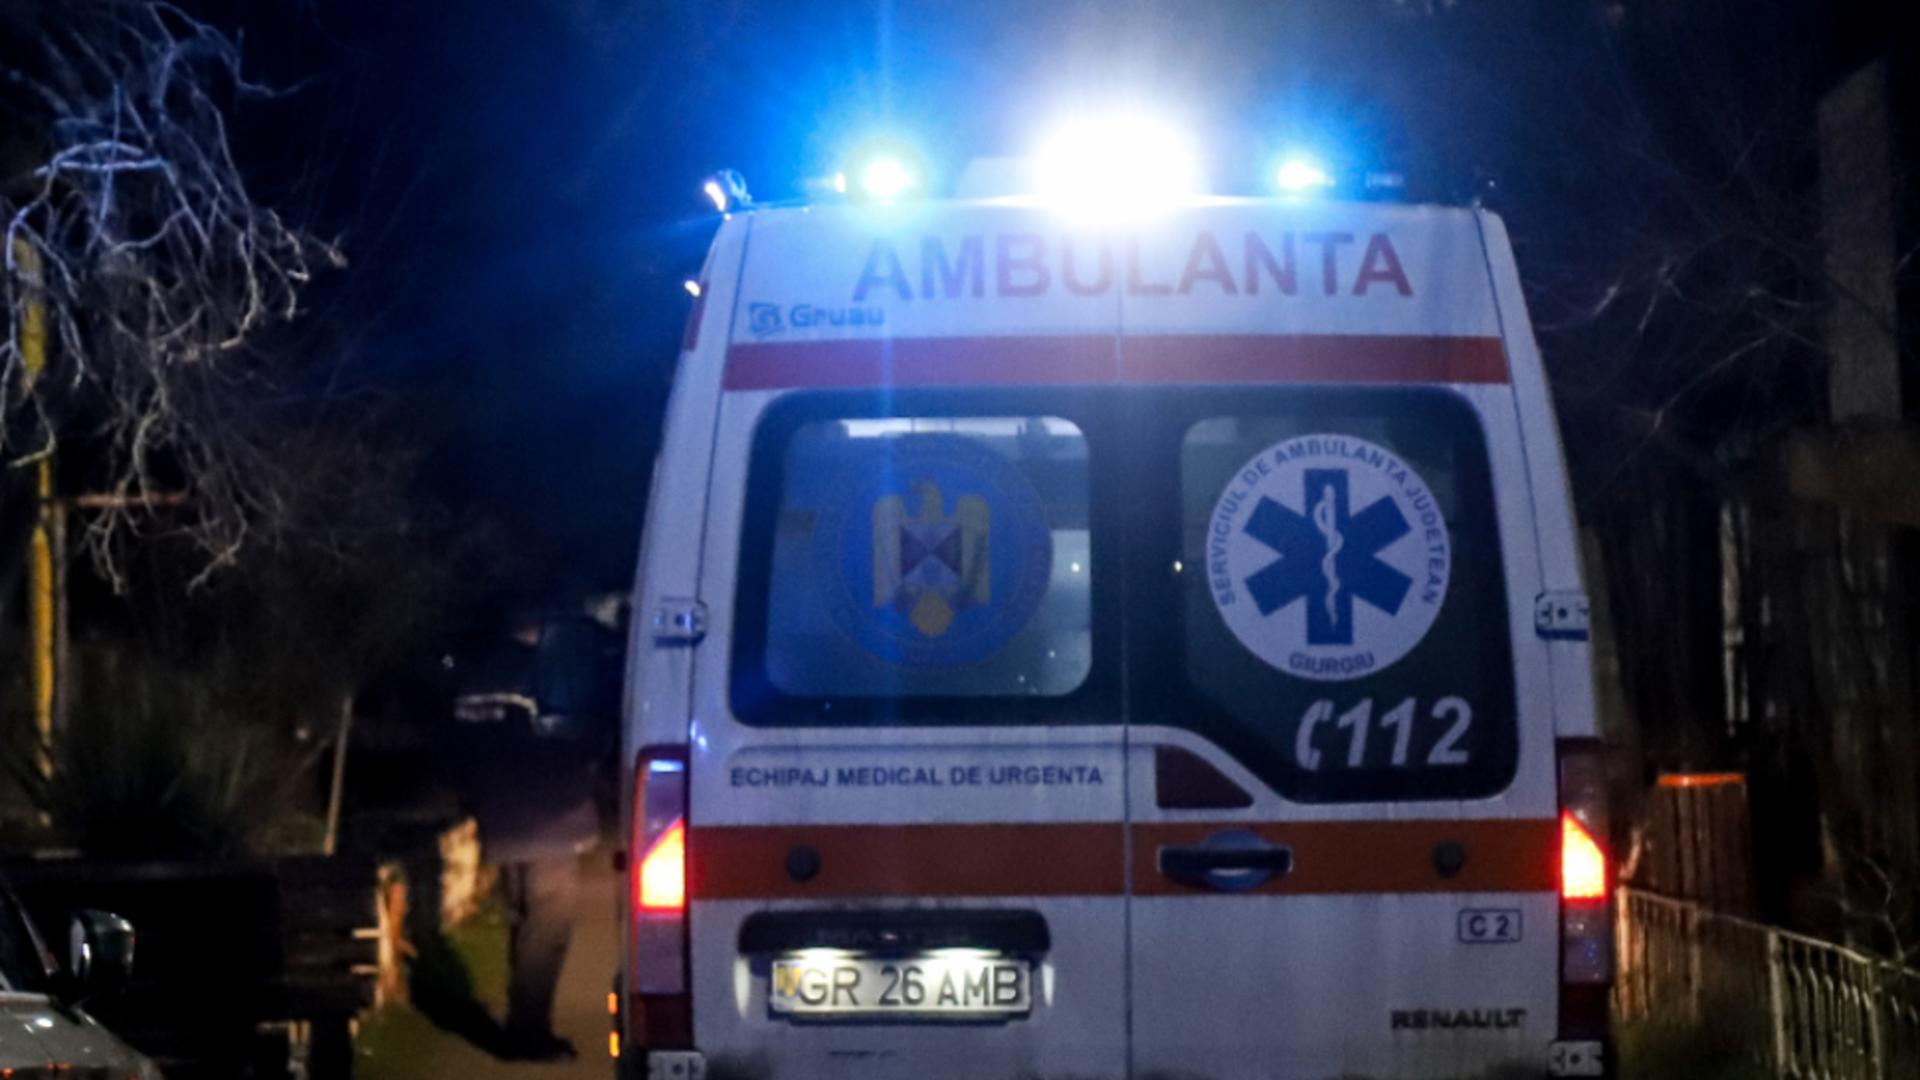 Ambulanță la locul crimei (foto Arcanu)